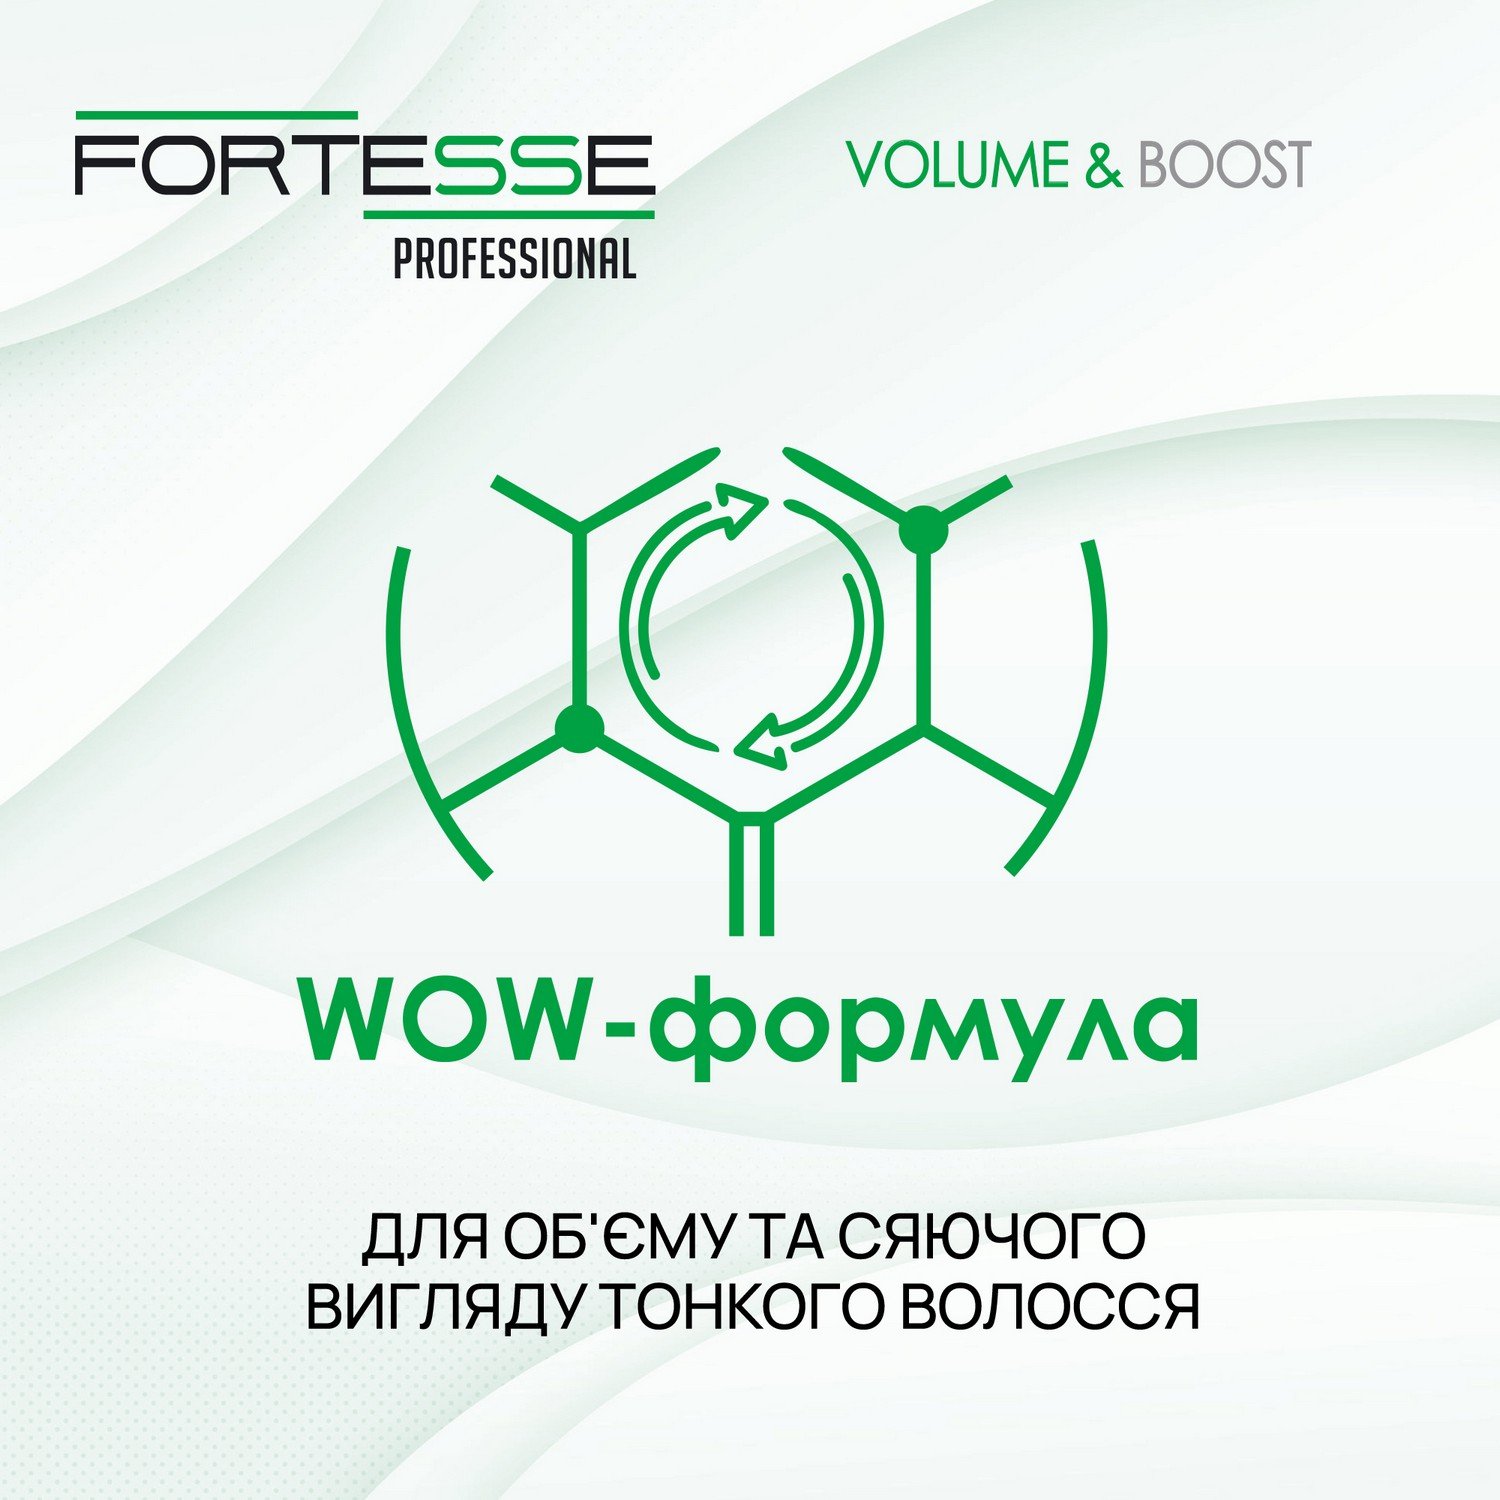 Шампунь Fortesse Professional Volume & Boost Объем, для тонких волос, с дозатором, 1000 мл - фото 6